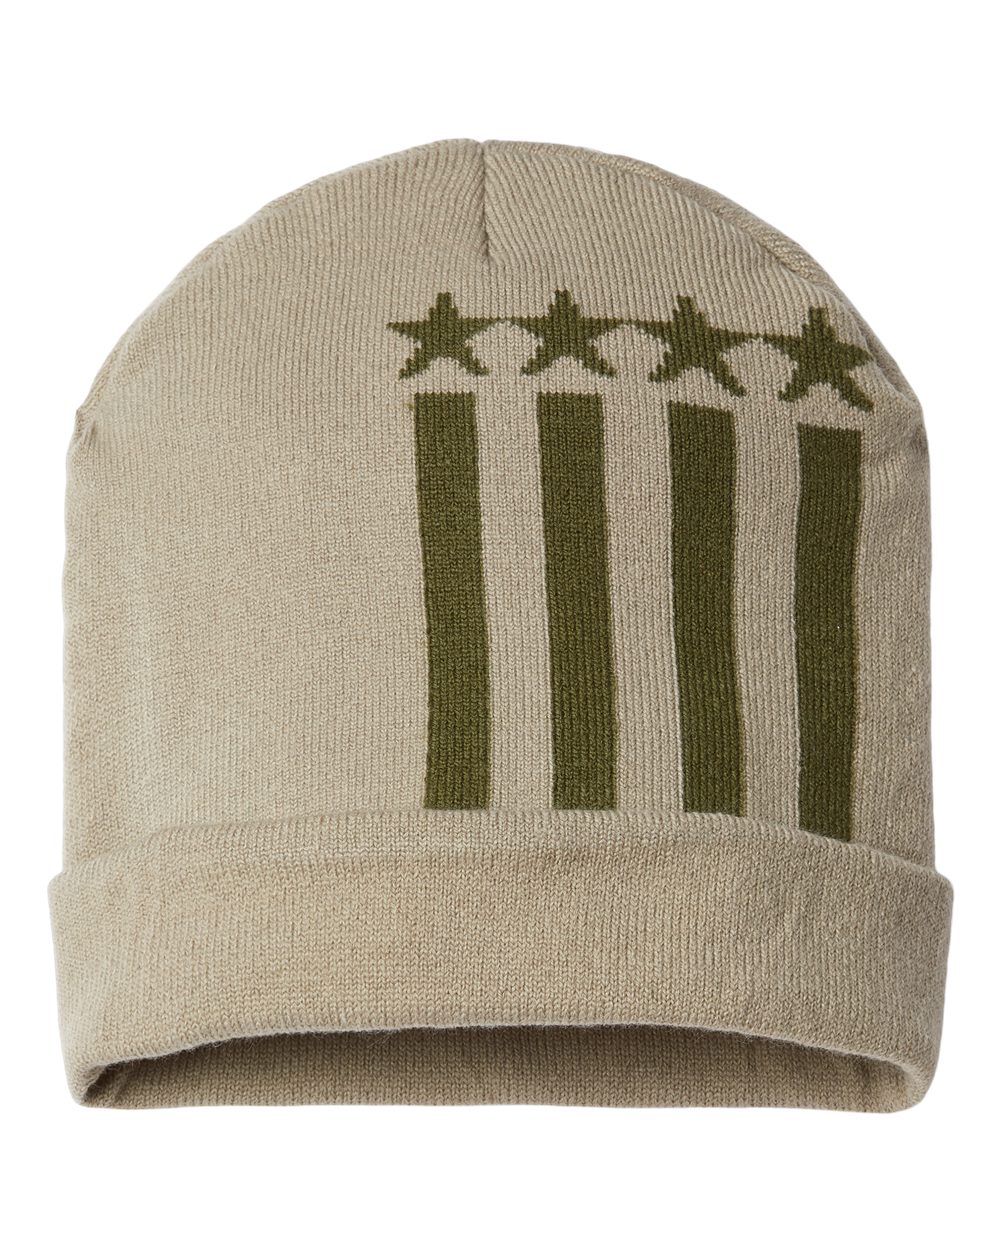 CAP AMERICA RK12 - USA-Made Patriotic Cuffed Beanie